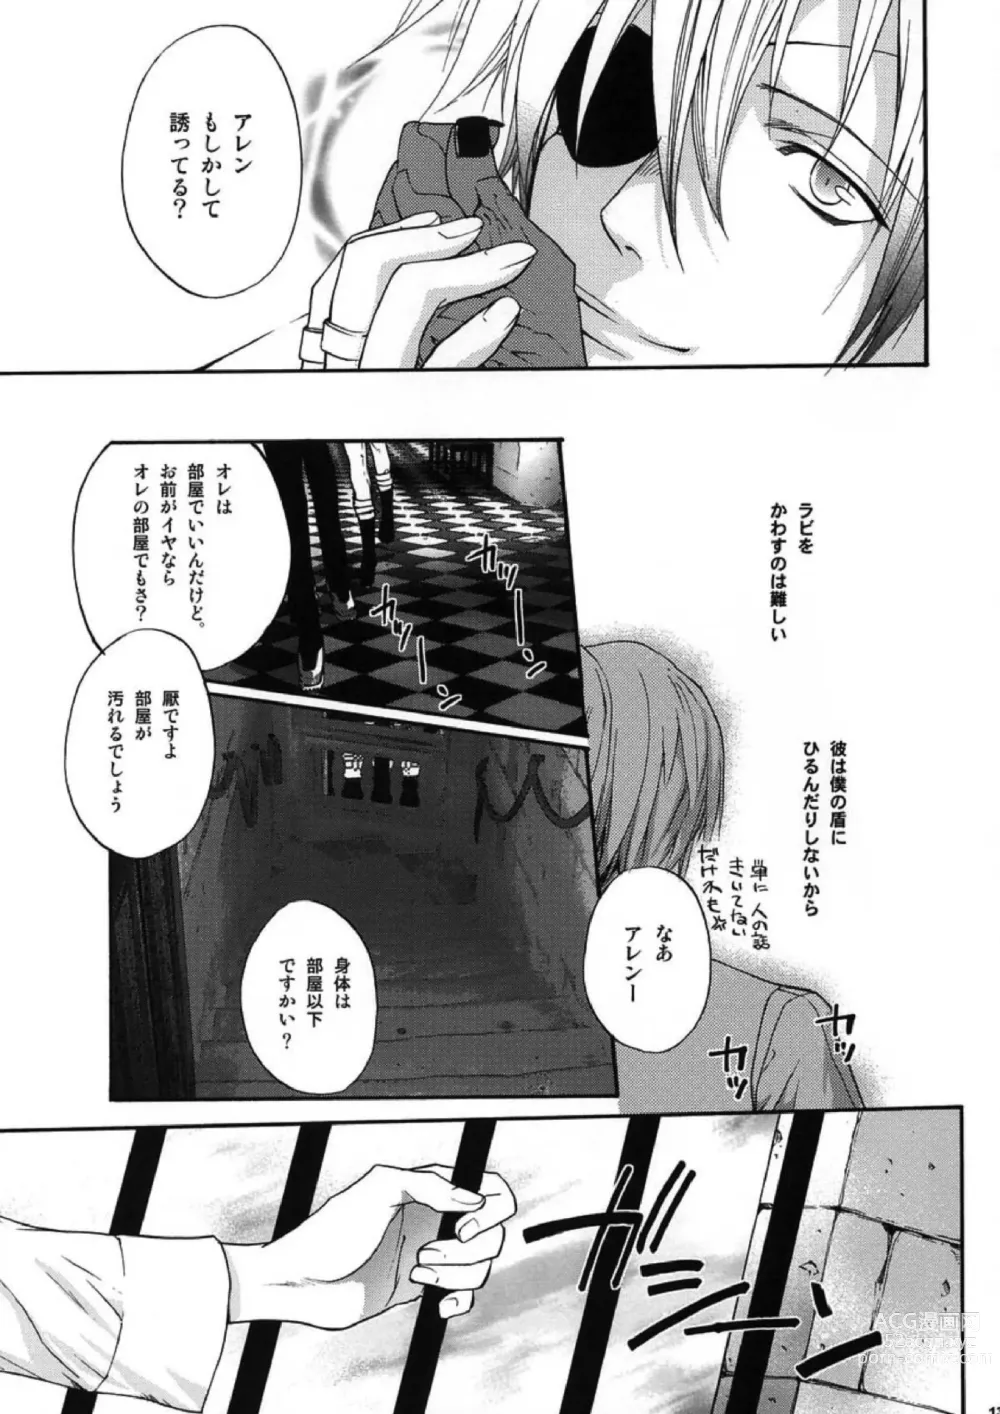 Page 11 of doujinshi Meikyuu no Matrix